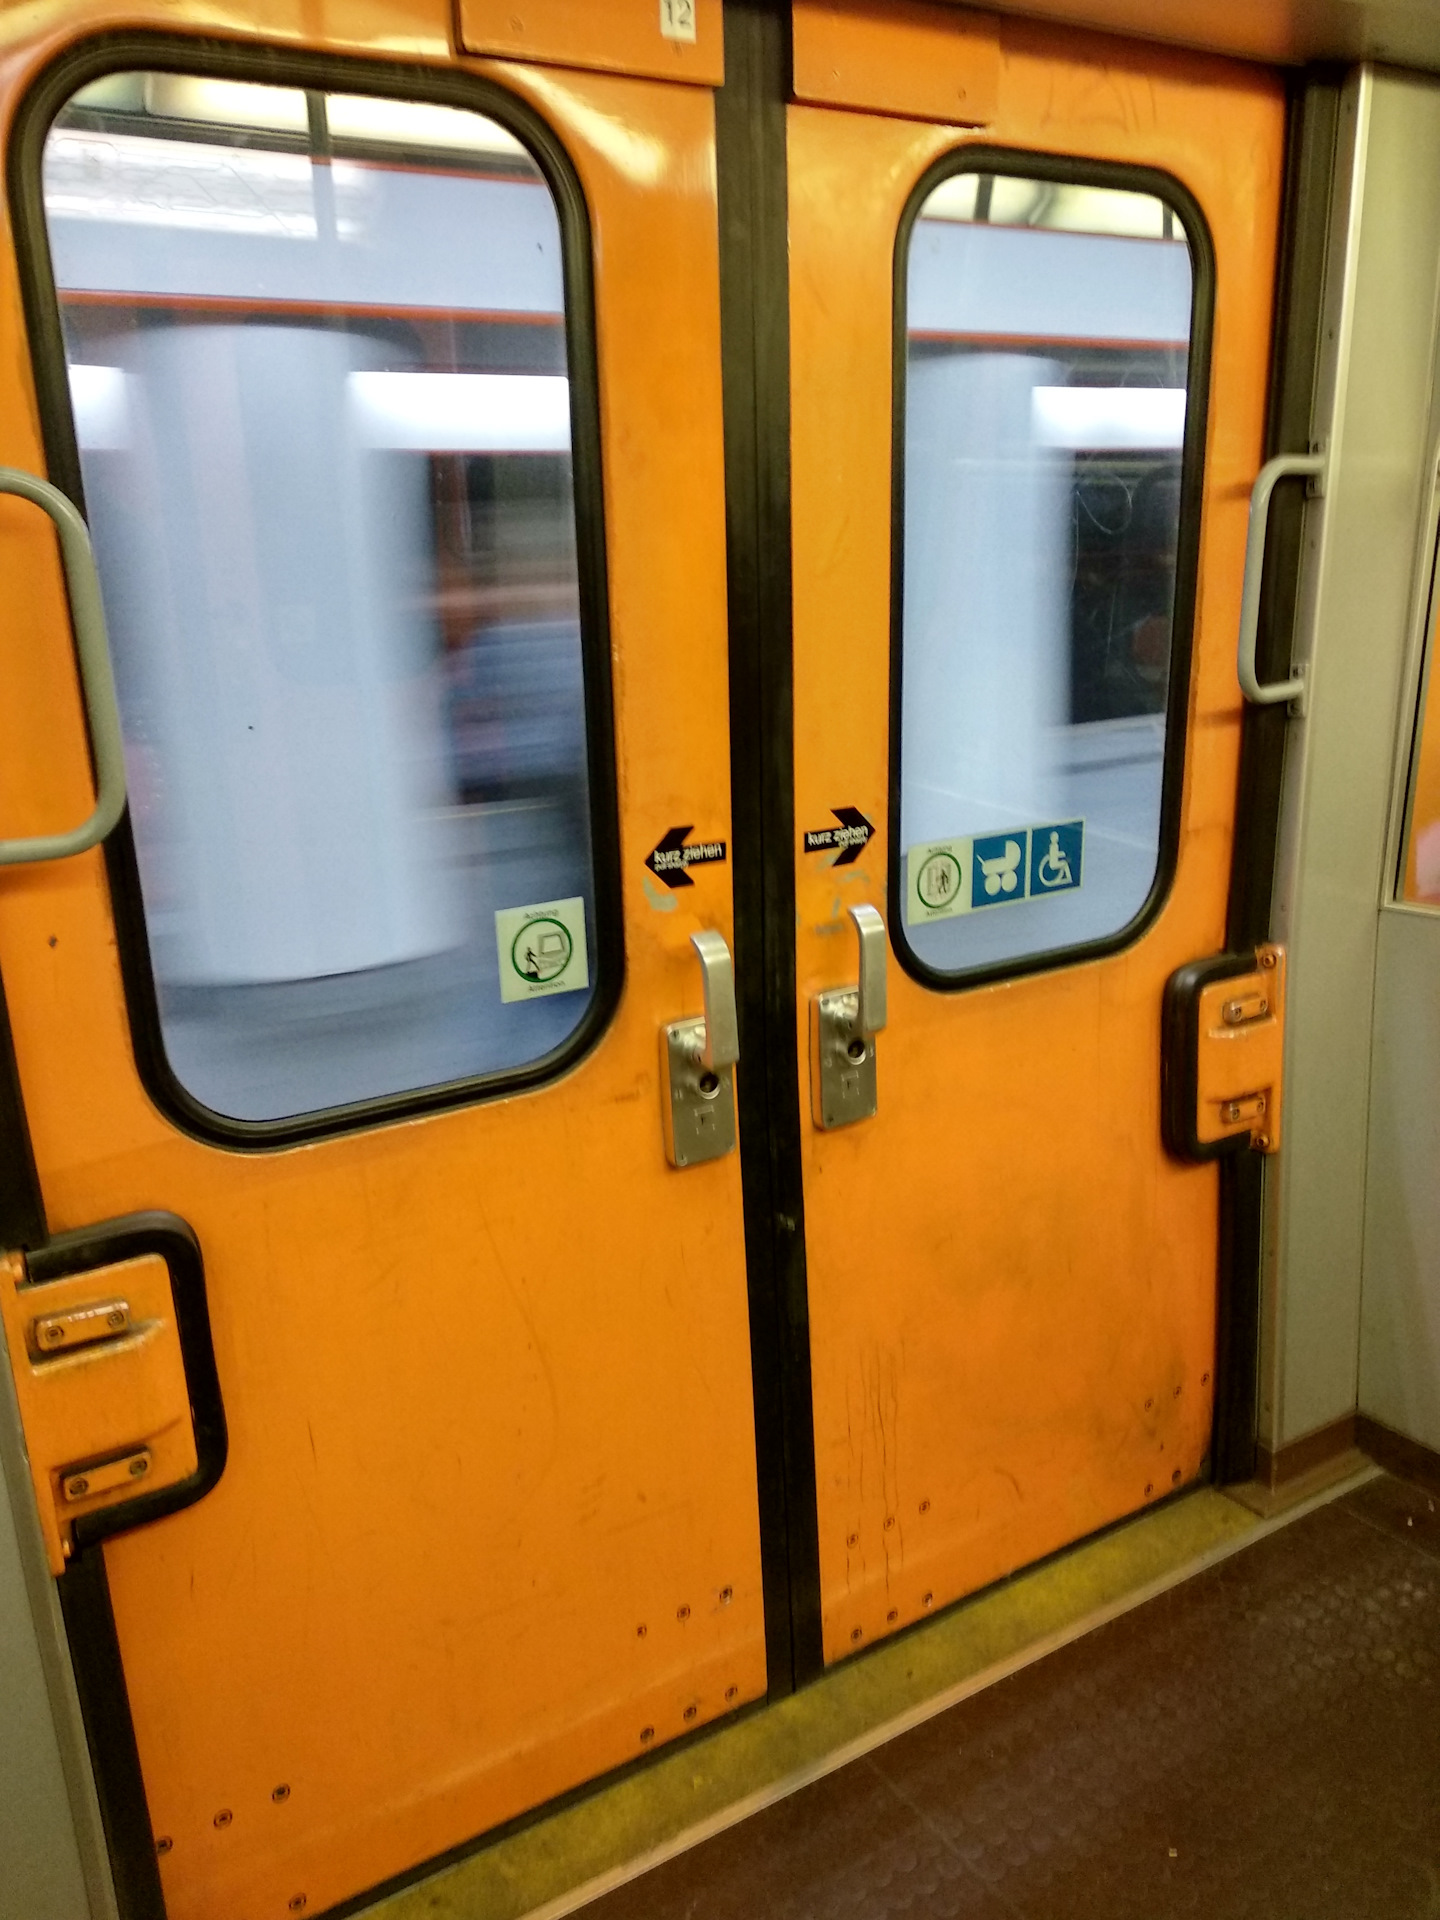 Двери метрополитена. Двери номерного вагона метро. Двери поезда метро. Открытые двери в метро.